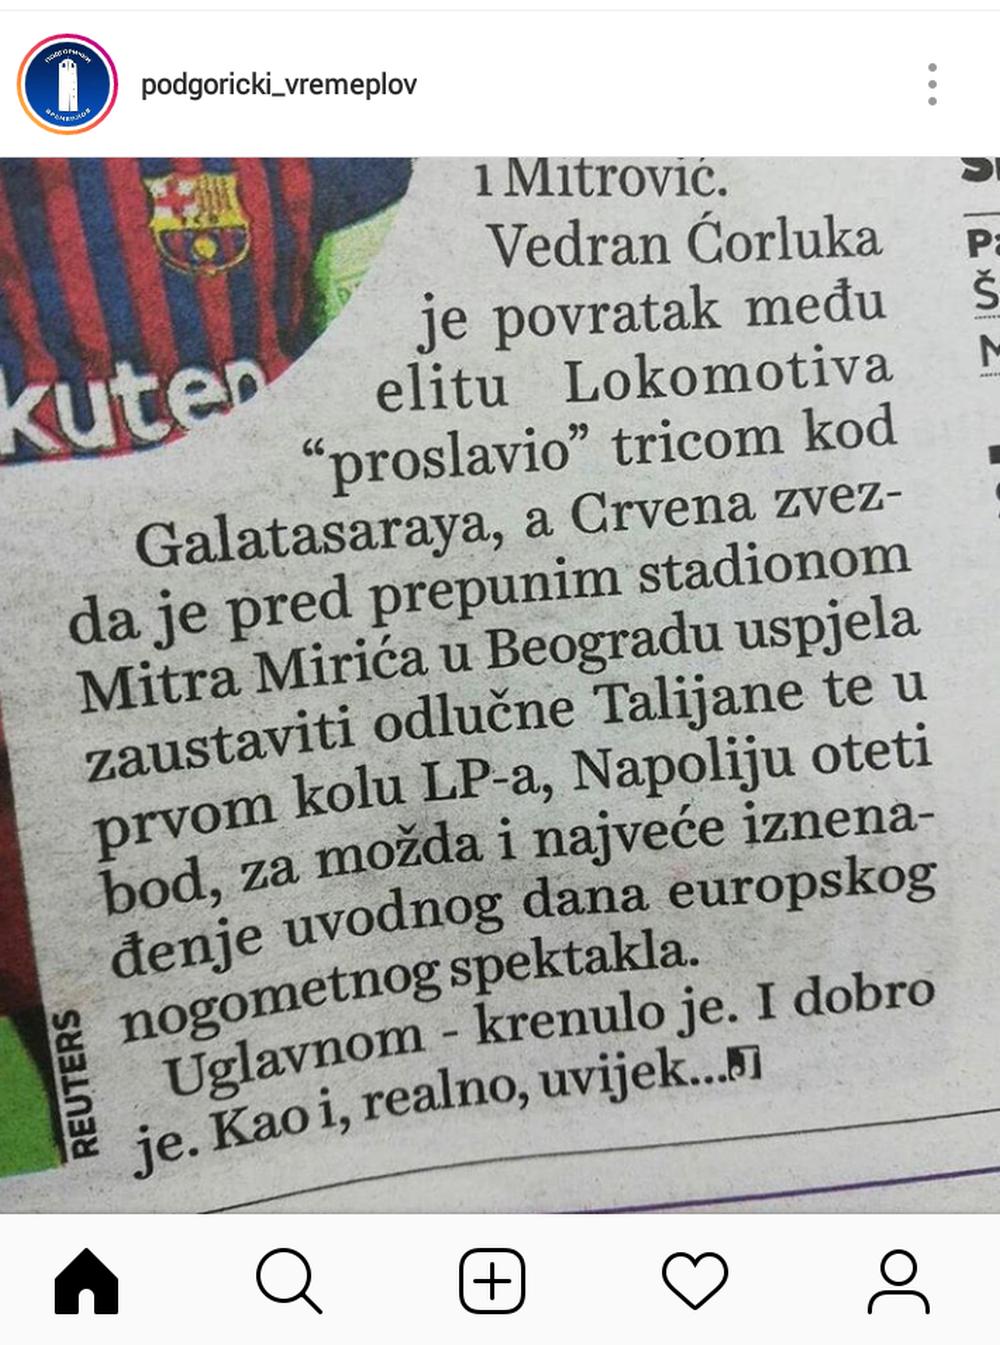 Izveštaj Jutarnjg lista u kome je stadion Crvene zvezde nazvan Mitar Mirić  